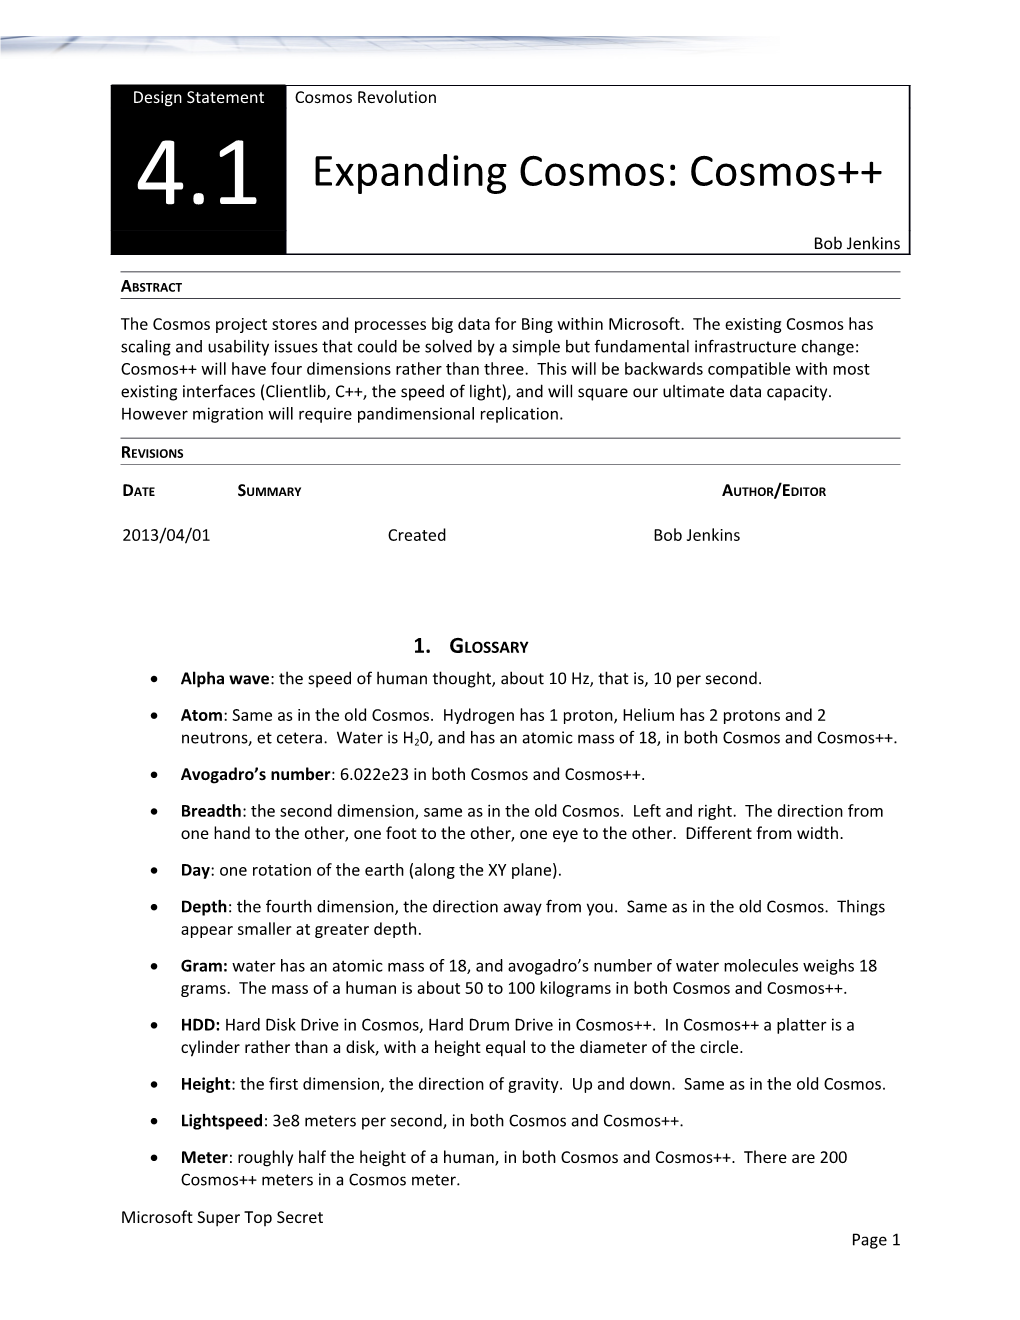 Expanding Cosmos: Cosmos